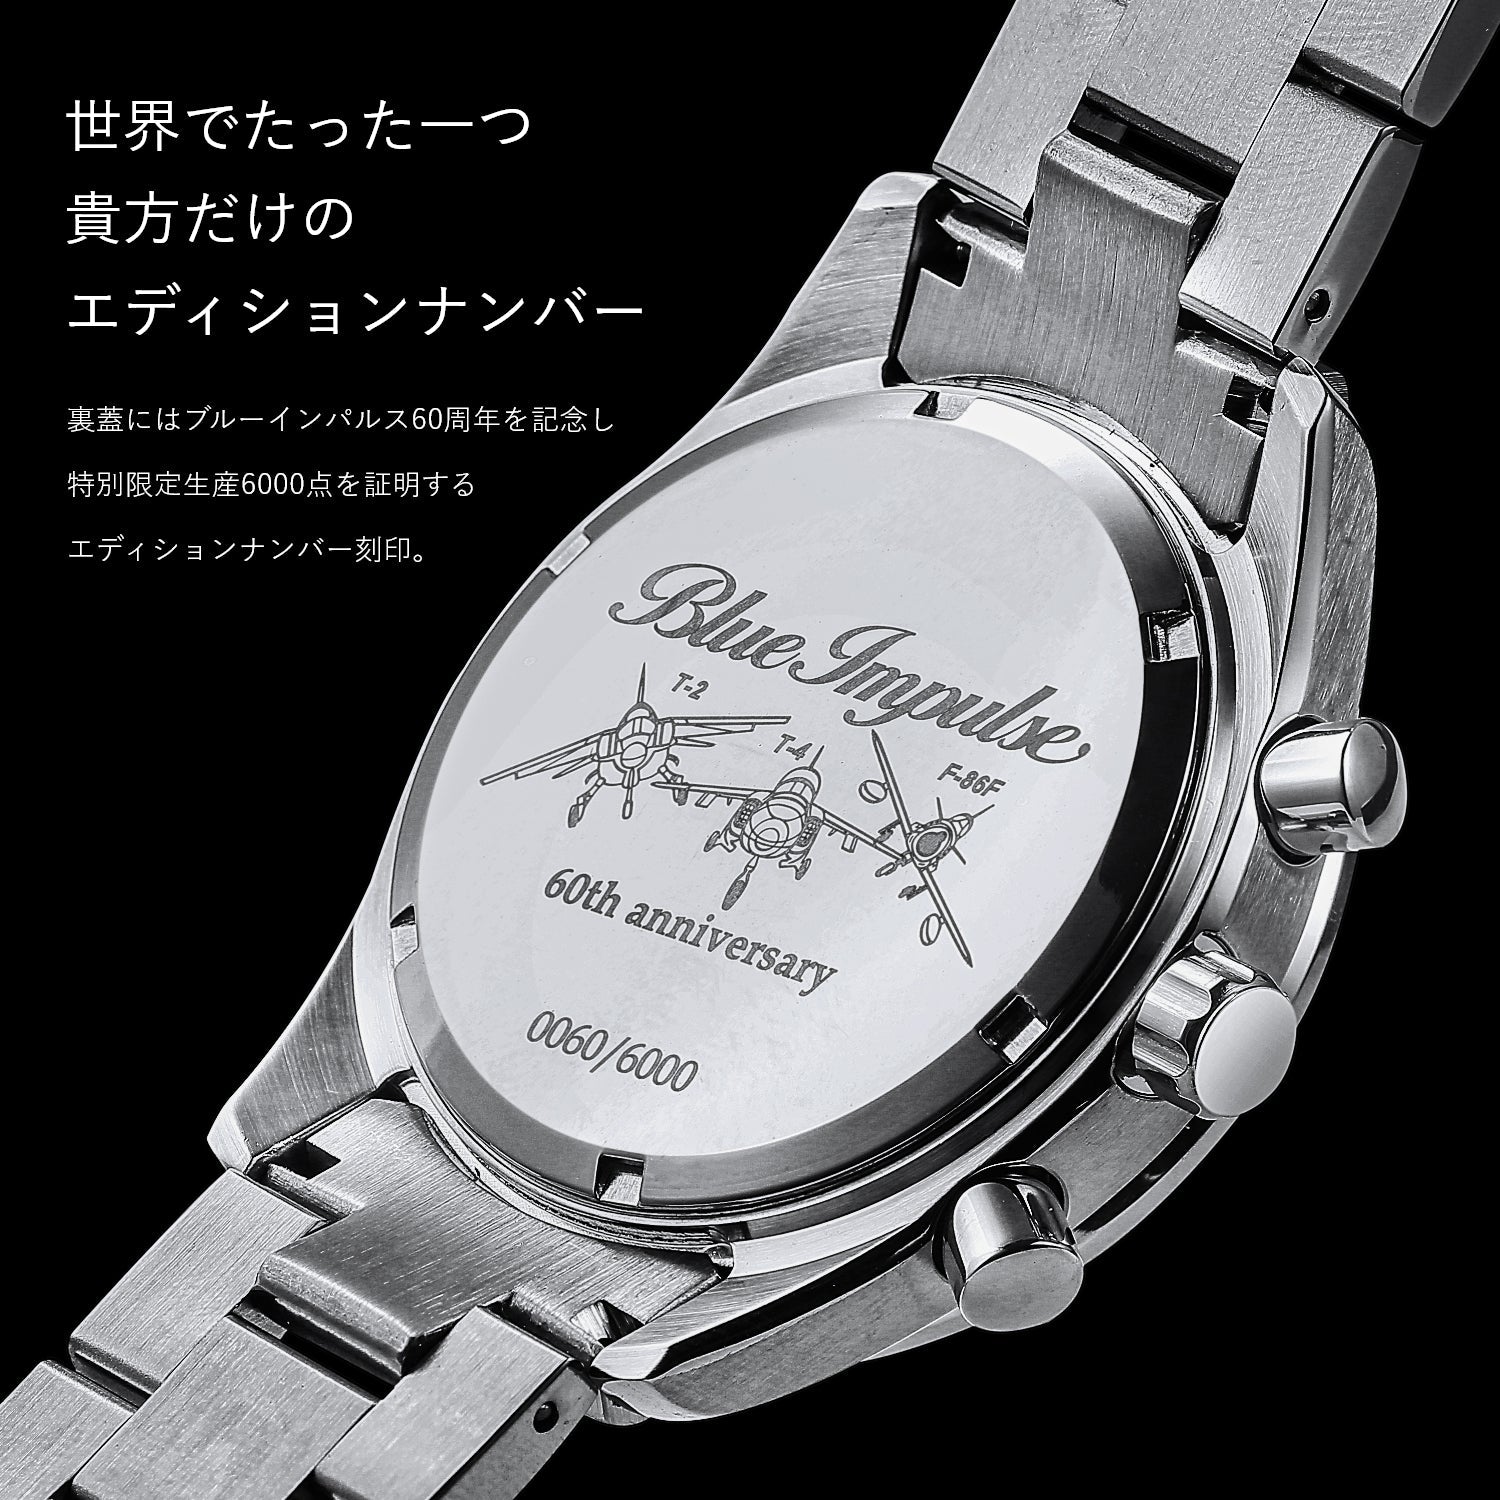 ブルーインパルス60周年記念 正式ライセンス クロノグラフ腕時計